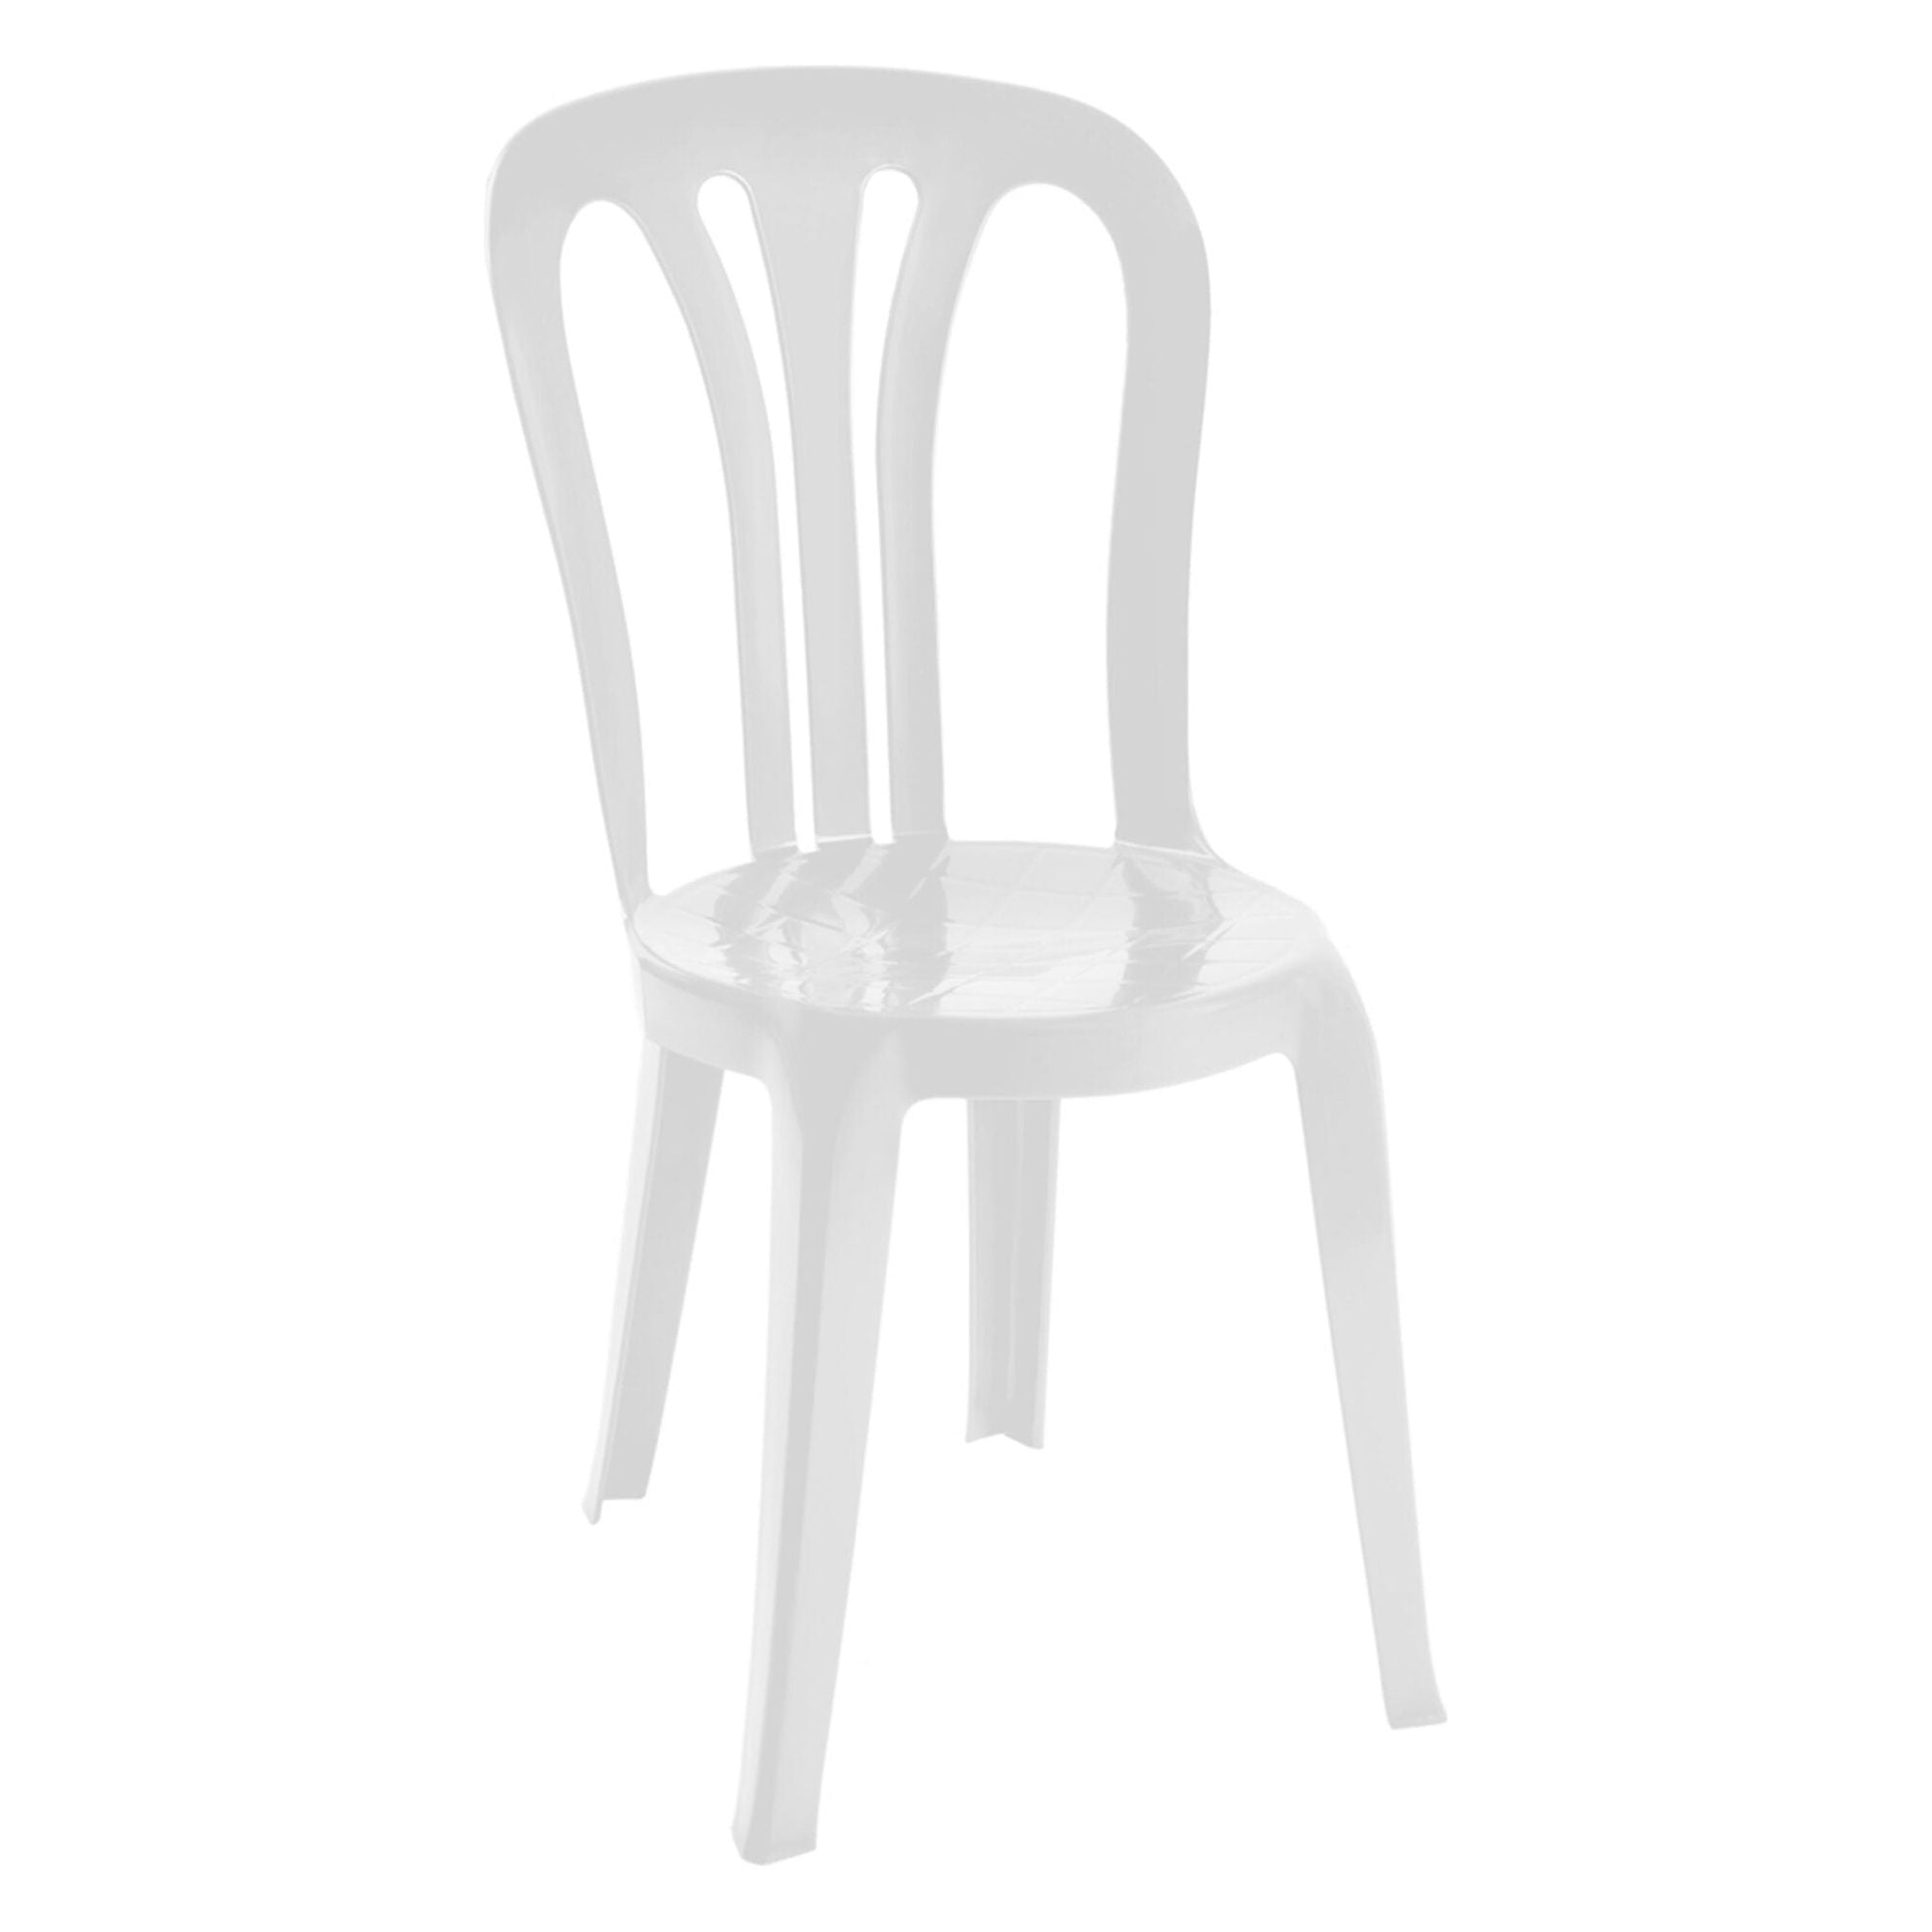 Garbar Garrotxa chair outdoor white